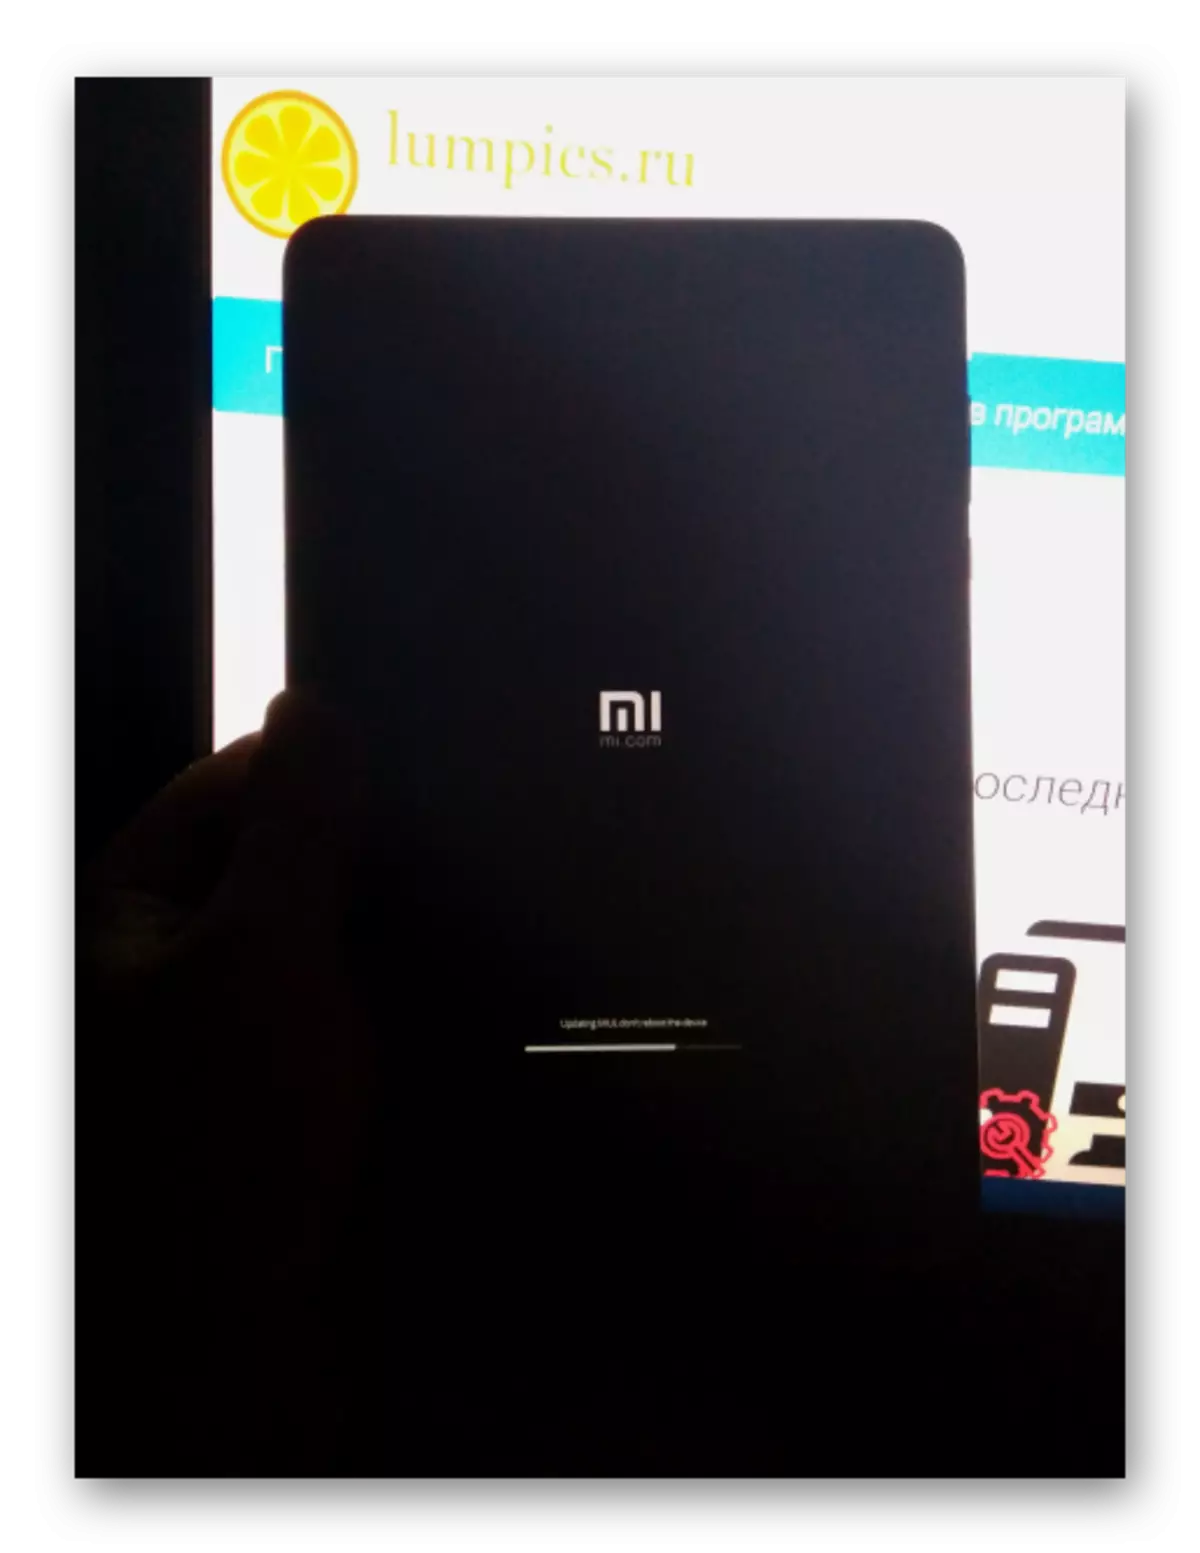 Enjam ekranyndaky Xiaomi MiPad 2 ösüşiň programma üpjünçiligi Gurnamagyň